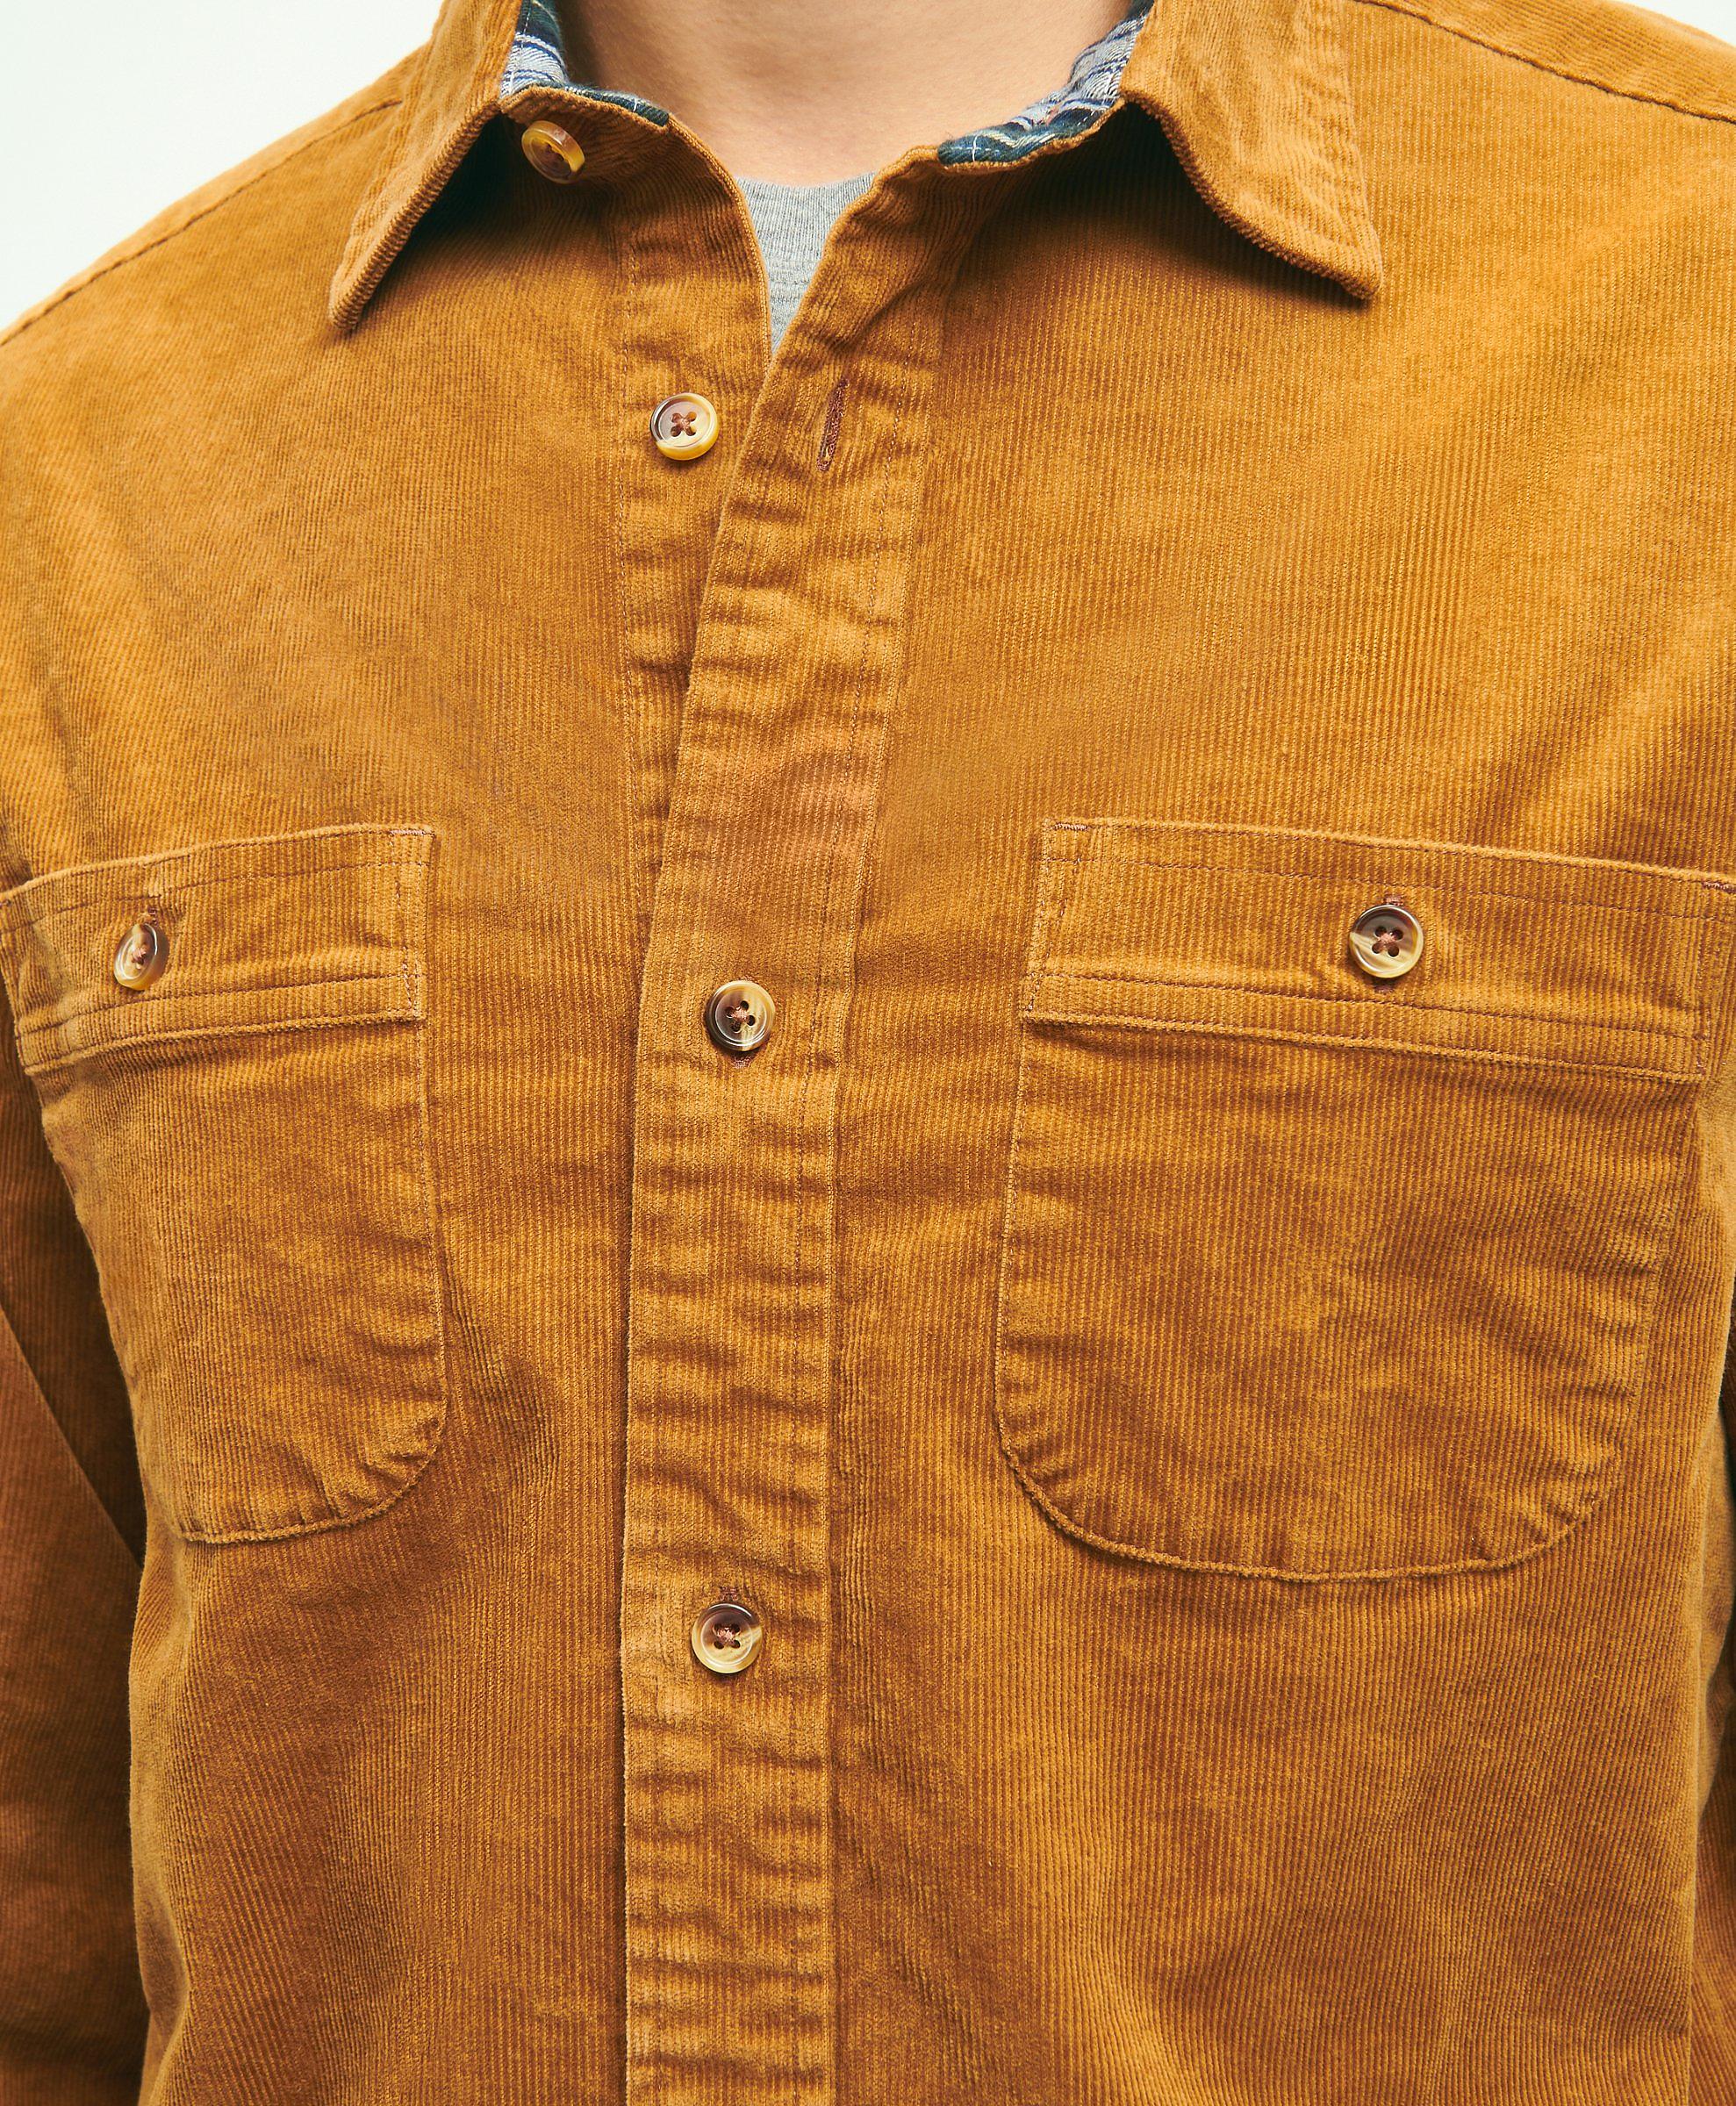 brown collar shirt